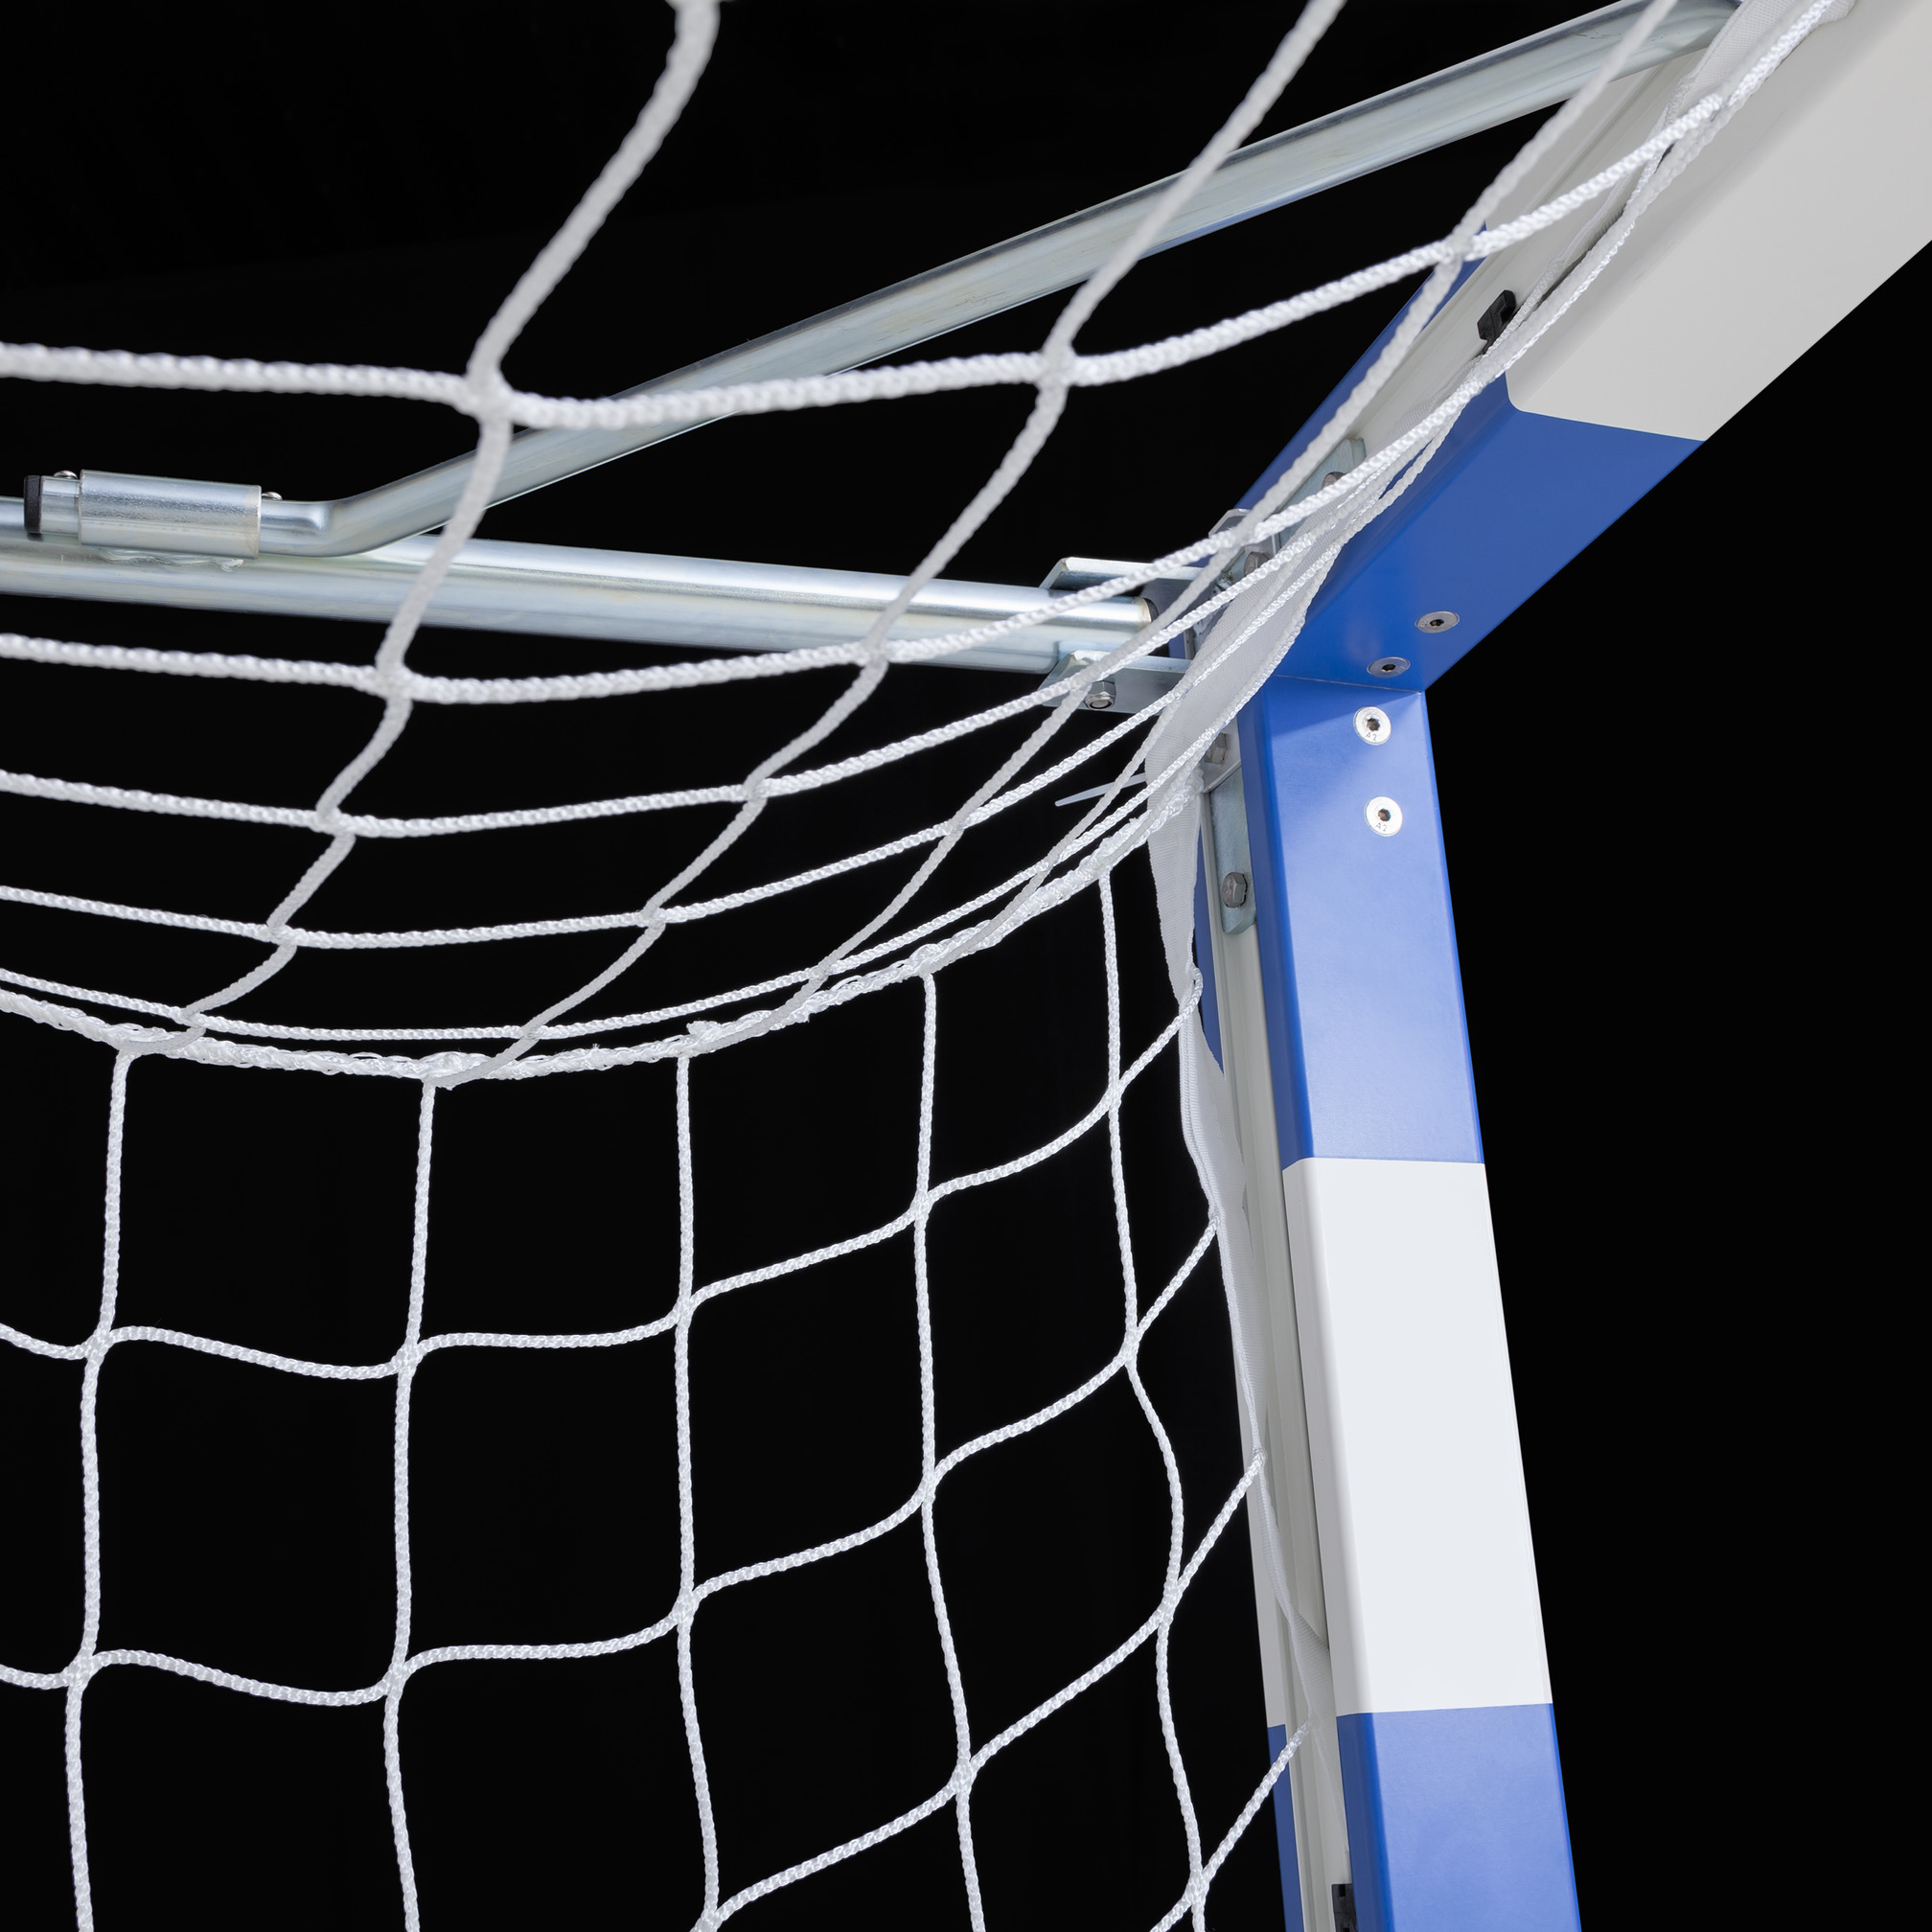 Goal net 3x2 m, meshes of 10x10 cm, ø 2.2 mm